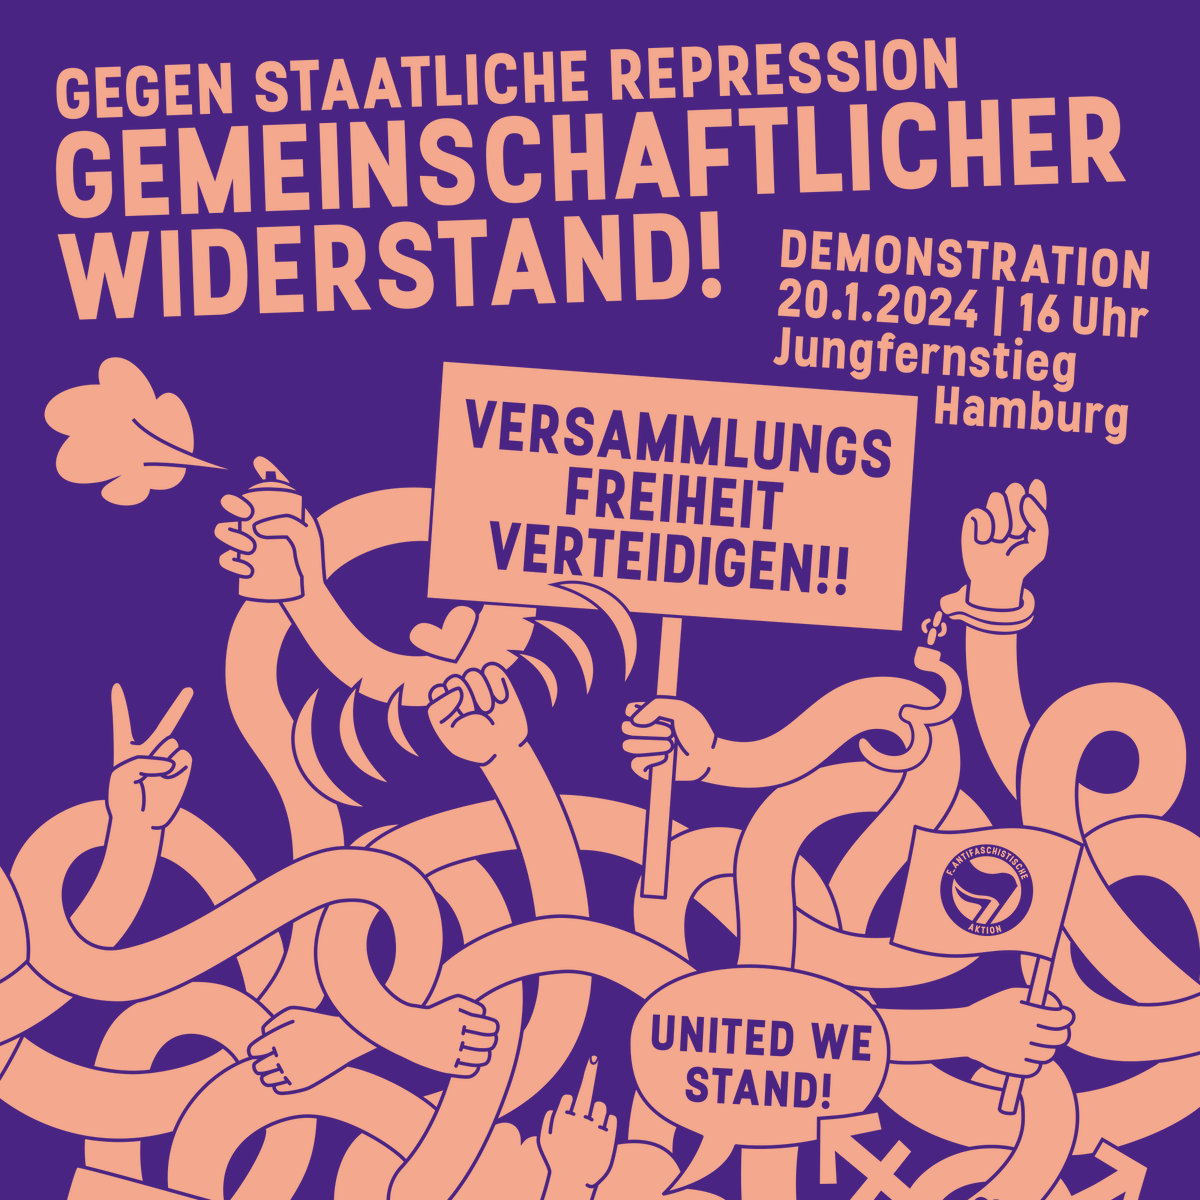 Am kommenden Samstag auf nach #Hamburg! Gemeinschaftlicher #Widerstand gegen staatliche #Repression! #UnitedWeStand #Rondenbarg